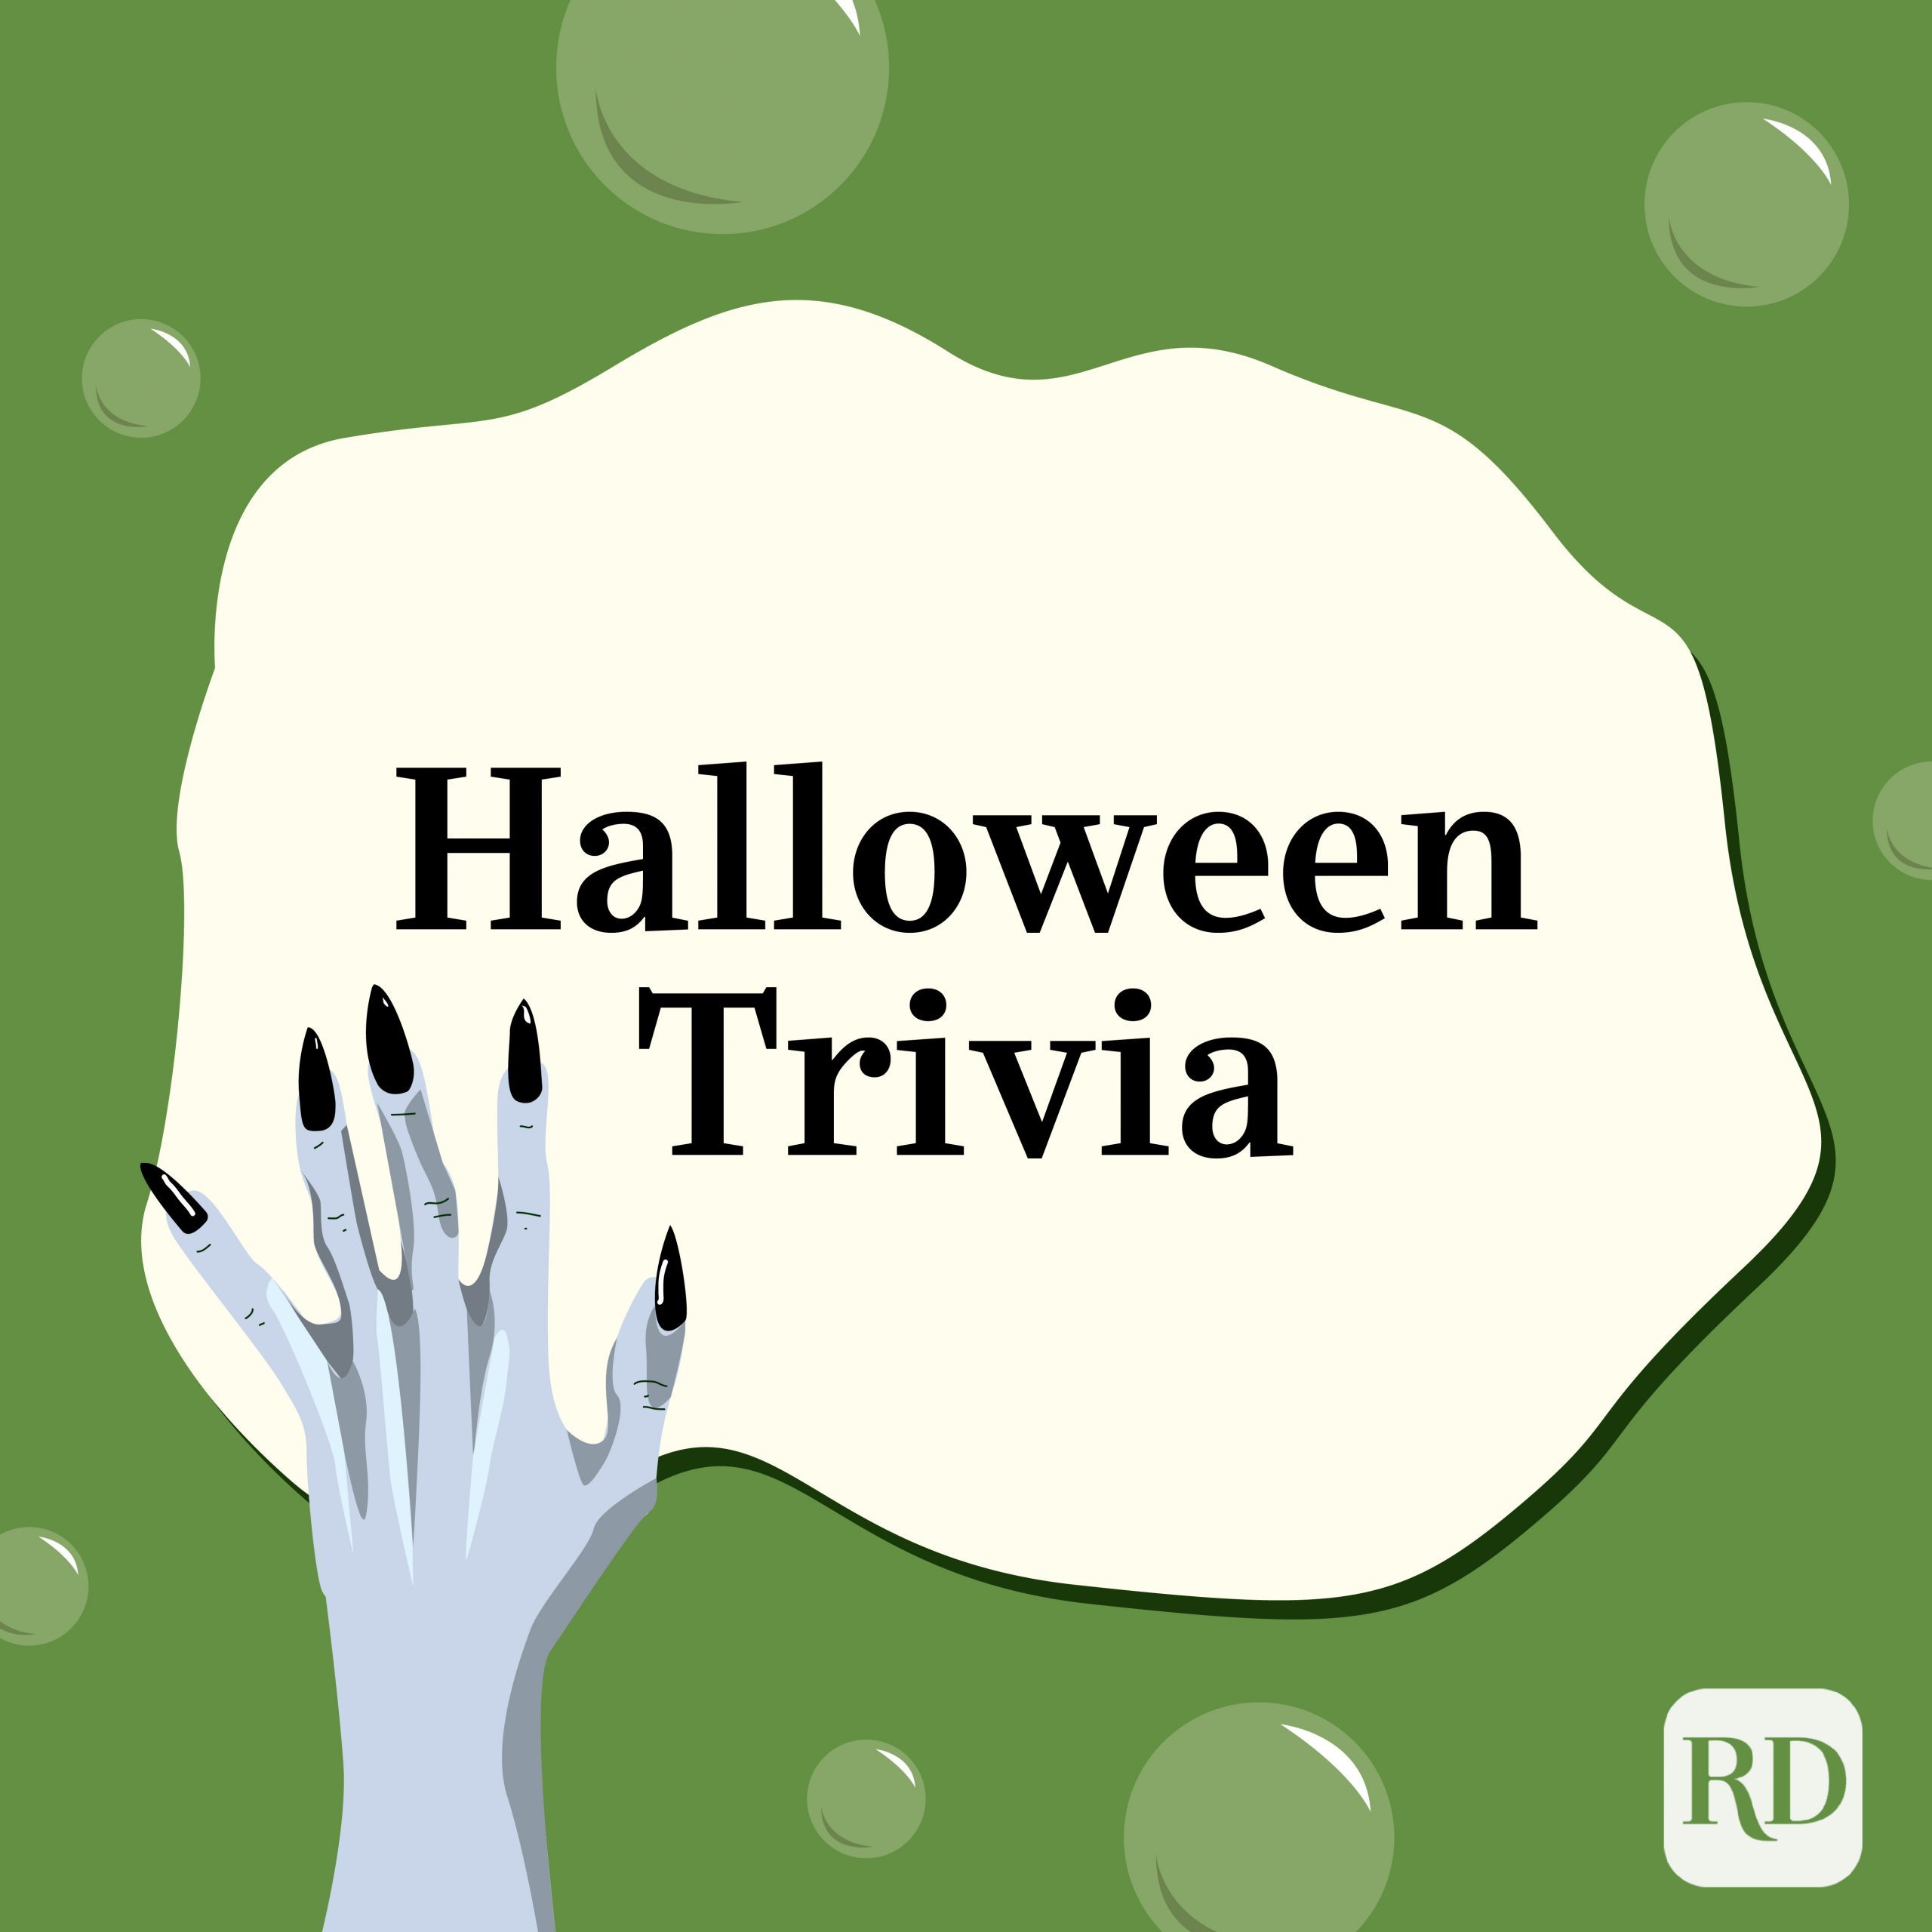 50 preguntas de Halloween (con respuestas) – Trivia de Halloween